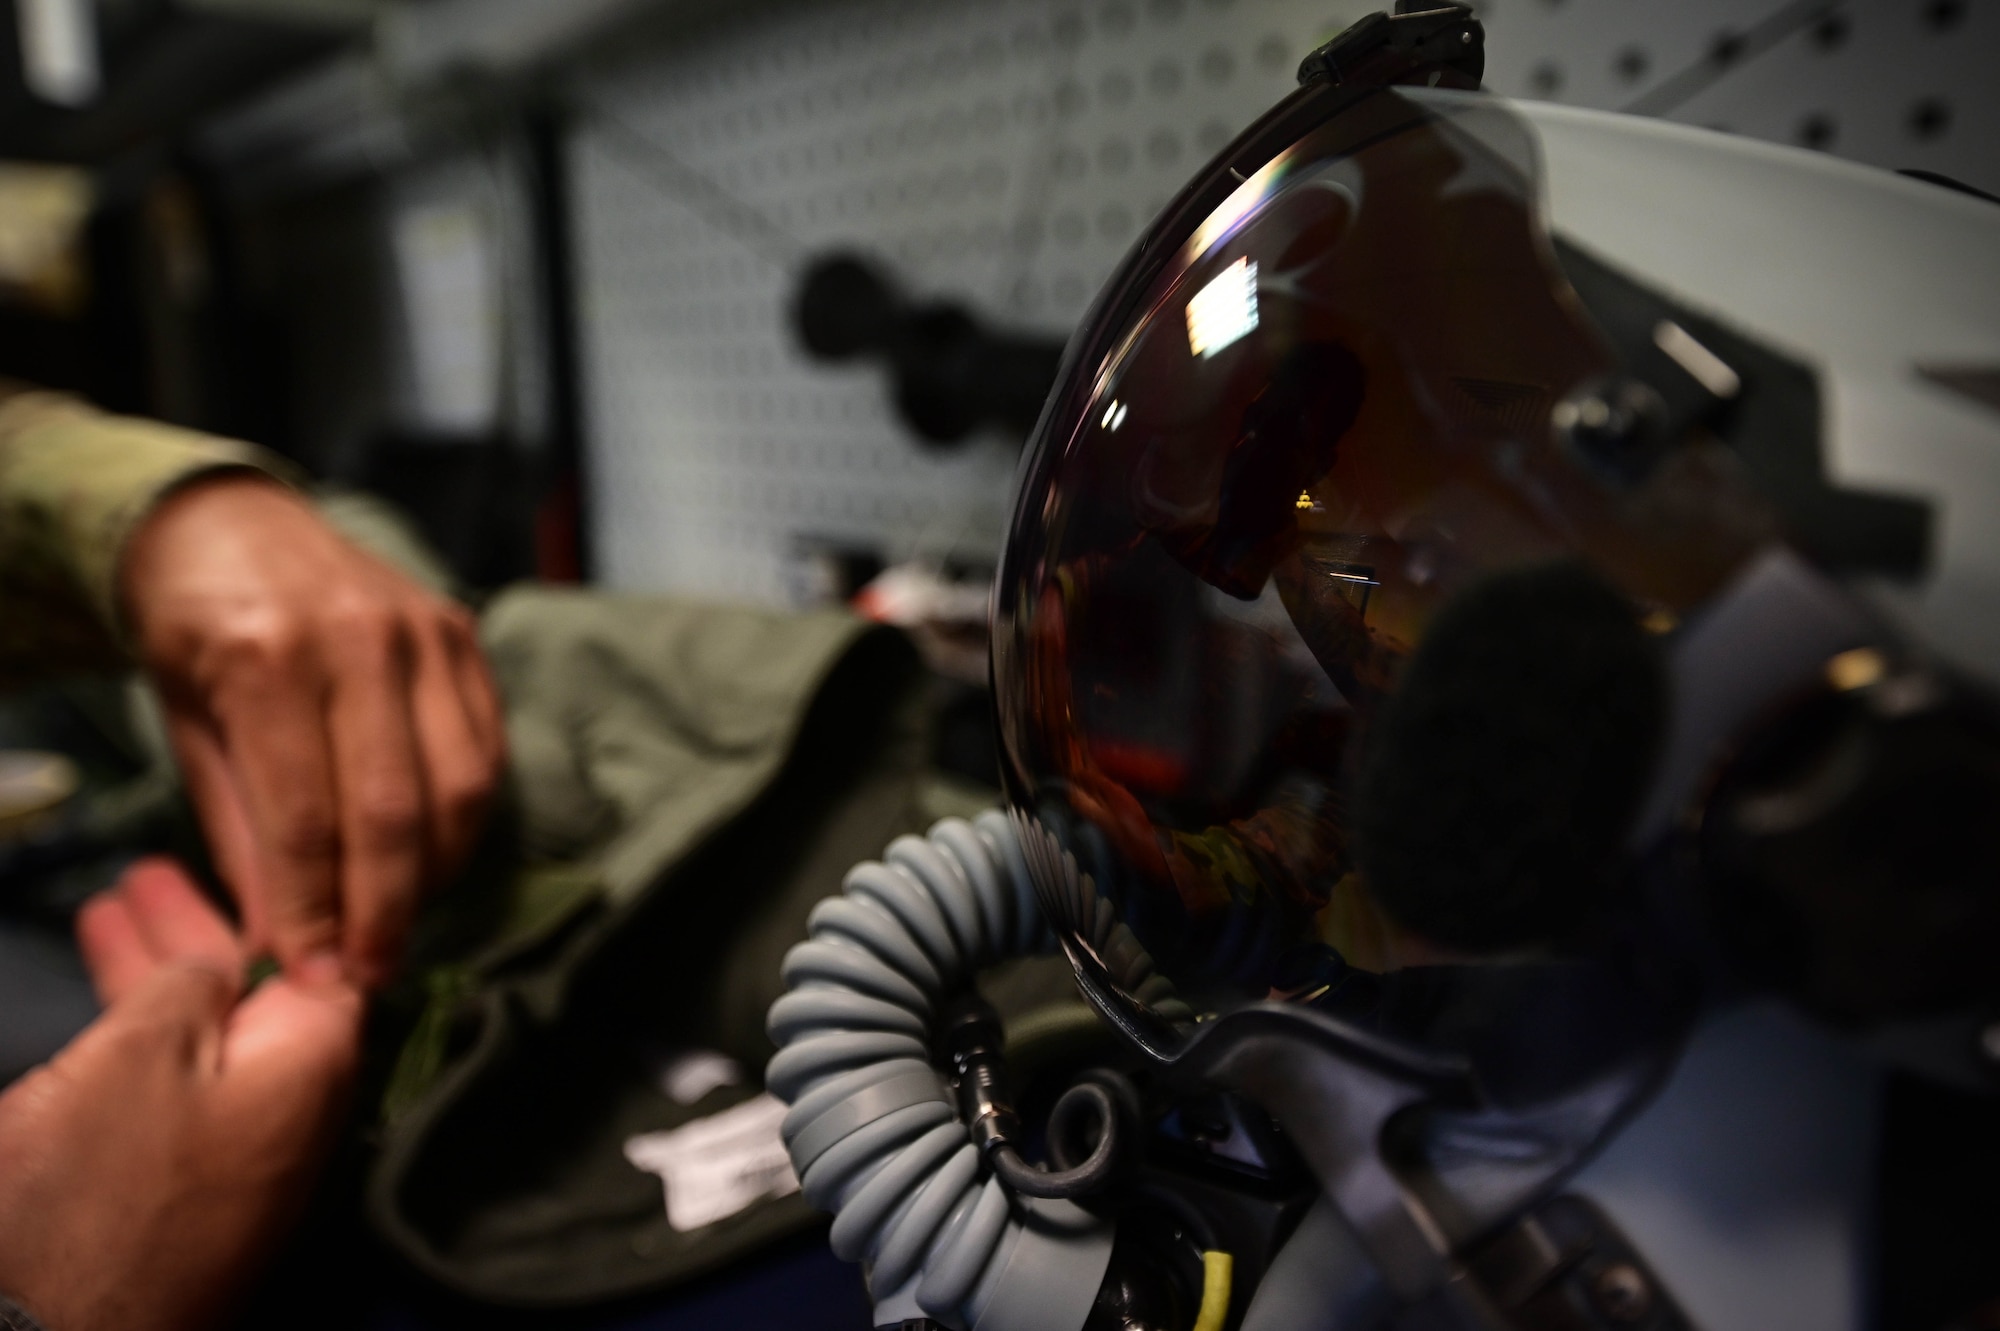 An Airman inspects a flight suit.